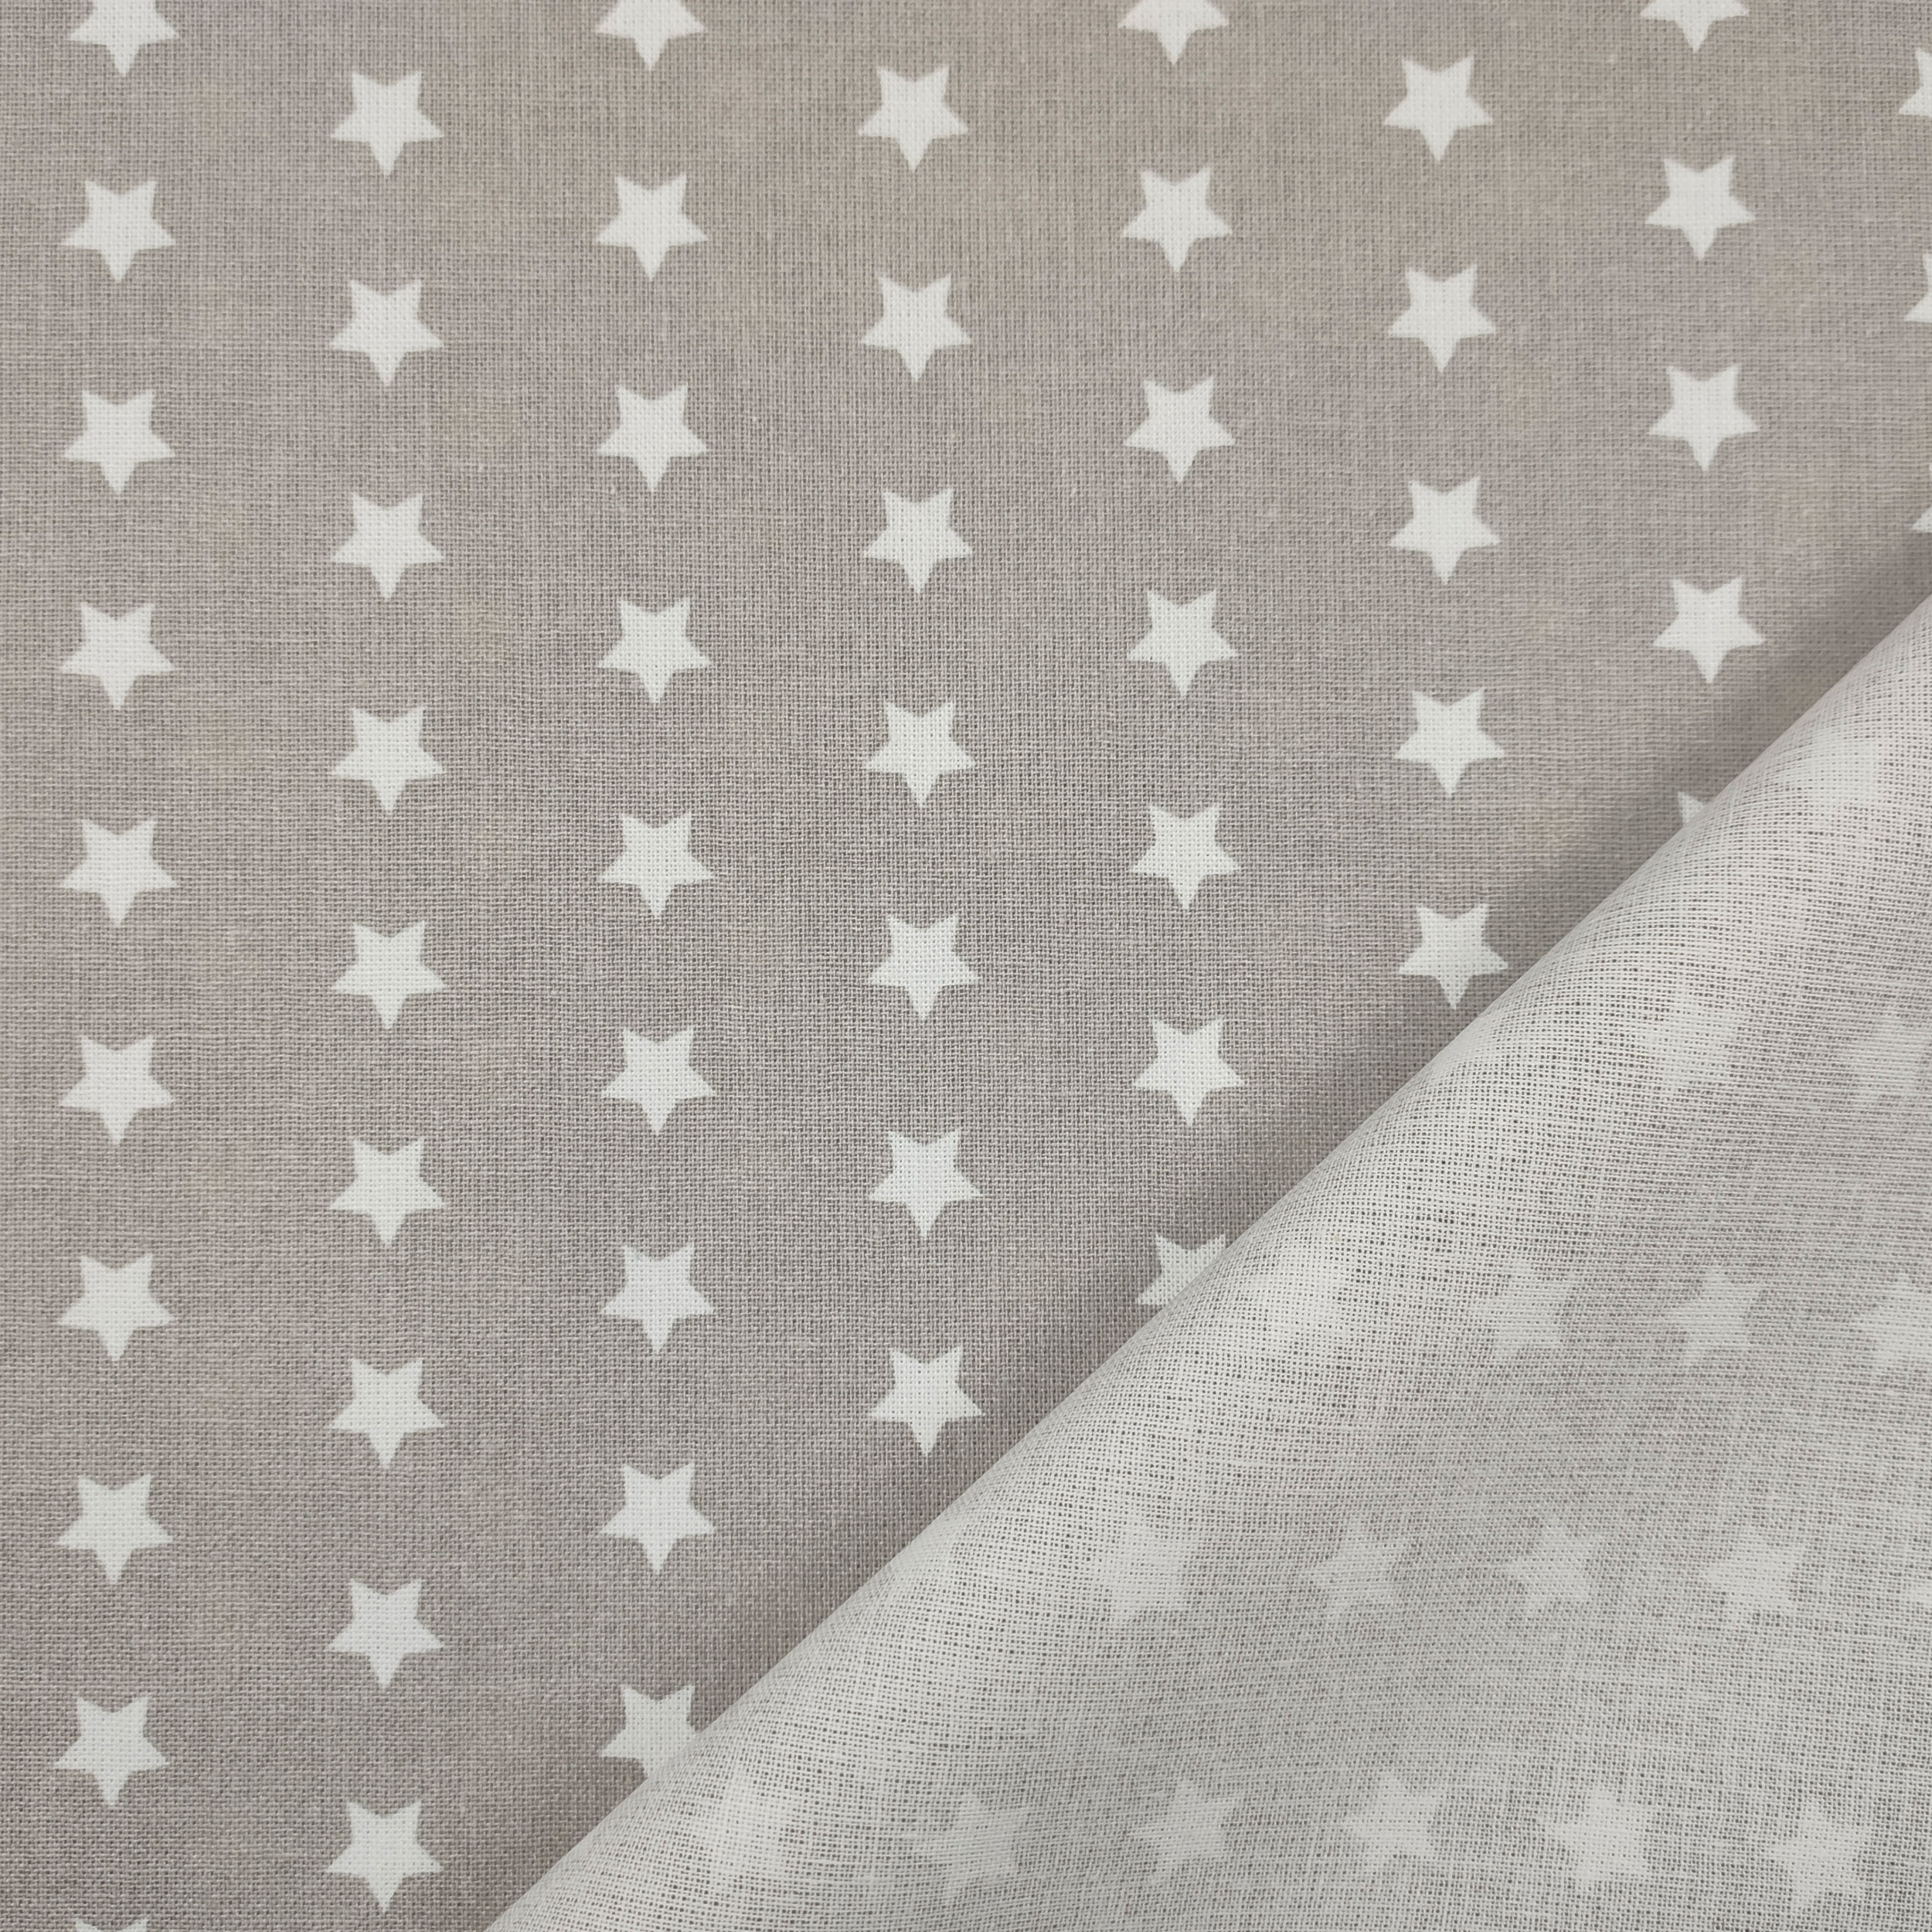 cotone stelle bianche sfondo grigio